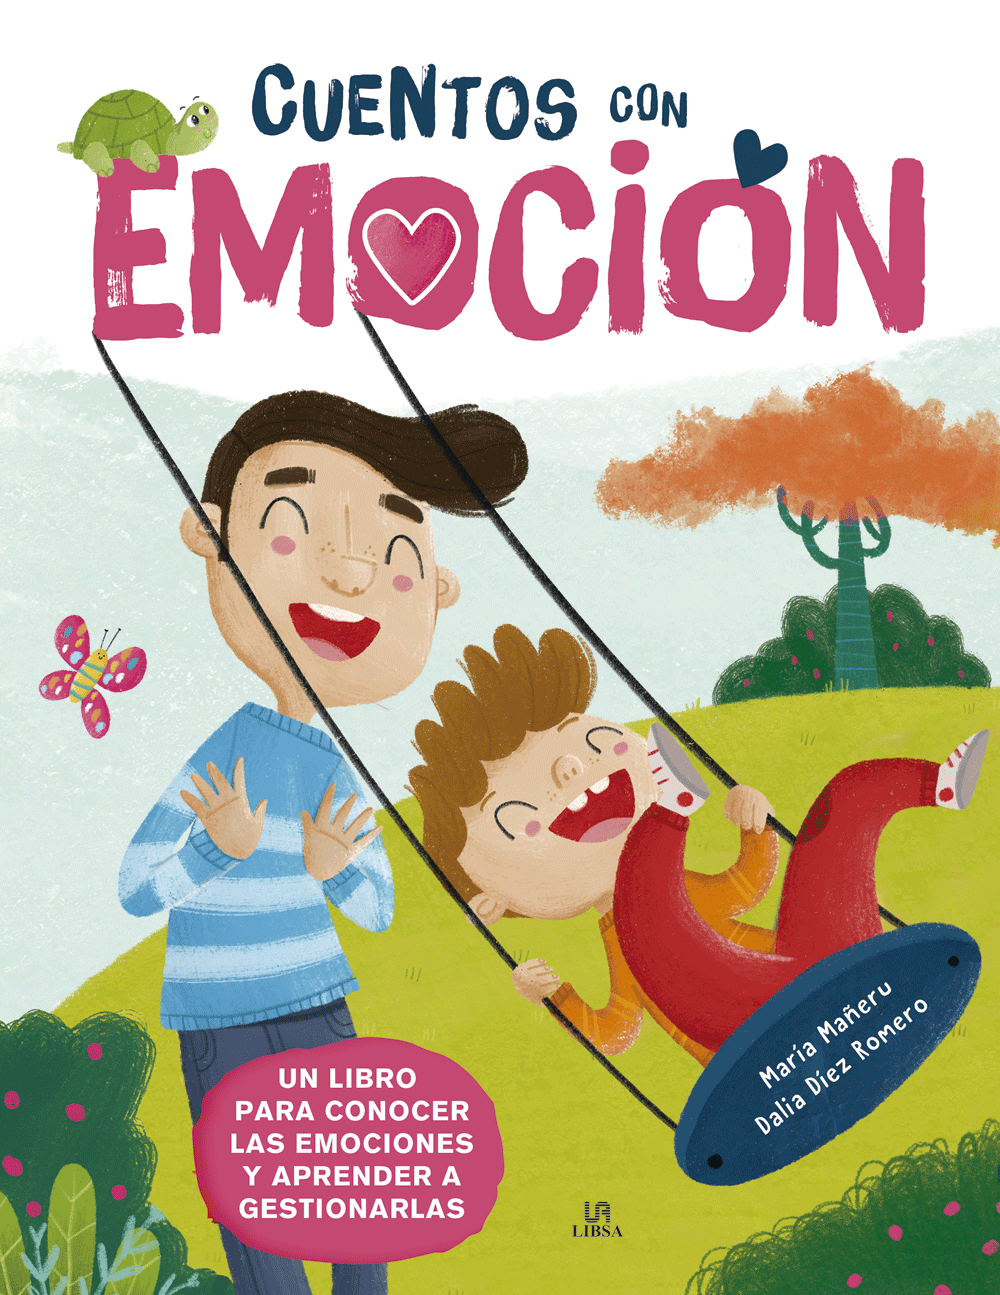 Contame un cuento! Cuentos infantiles para colorear niños de 1 a 3 años  (Spanish Edition)